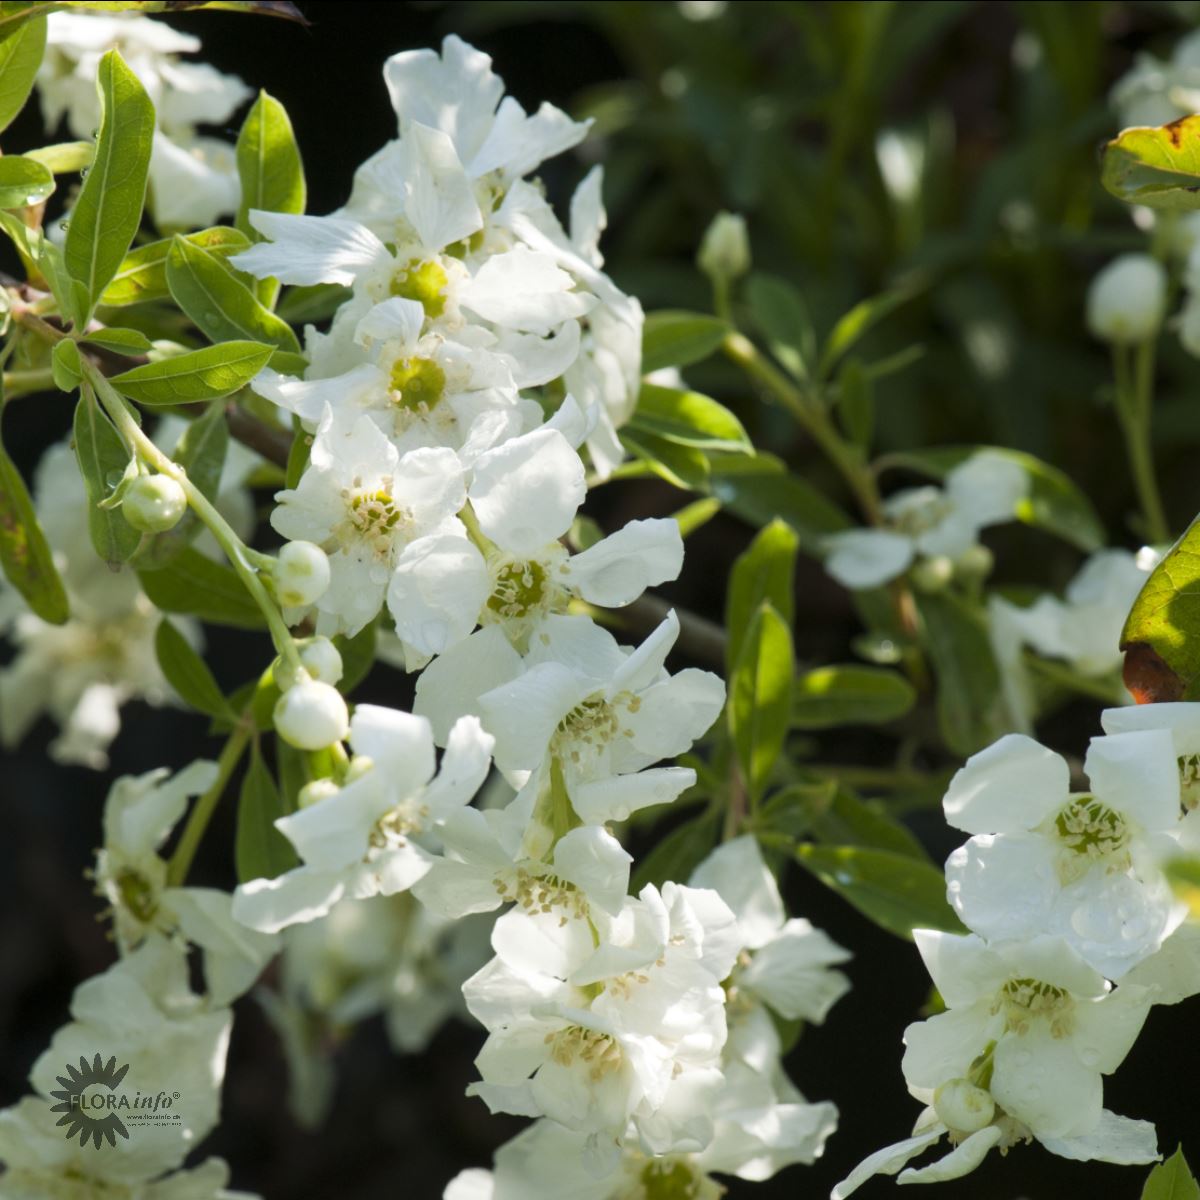 Perlebusk — Exochorda Racemosa, "Niagara" er sådan en god busk de helt rene hvide blomster, der åbner sig fra permorsfarvede knopper og her står udsprungne med deres hvide kronblade op i mod det grønne løv og fine blade